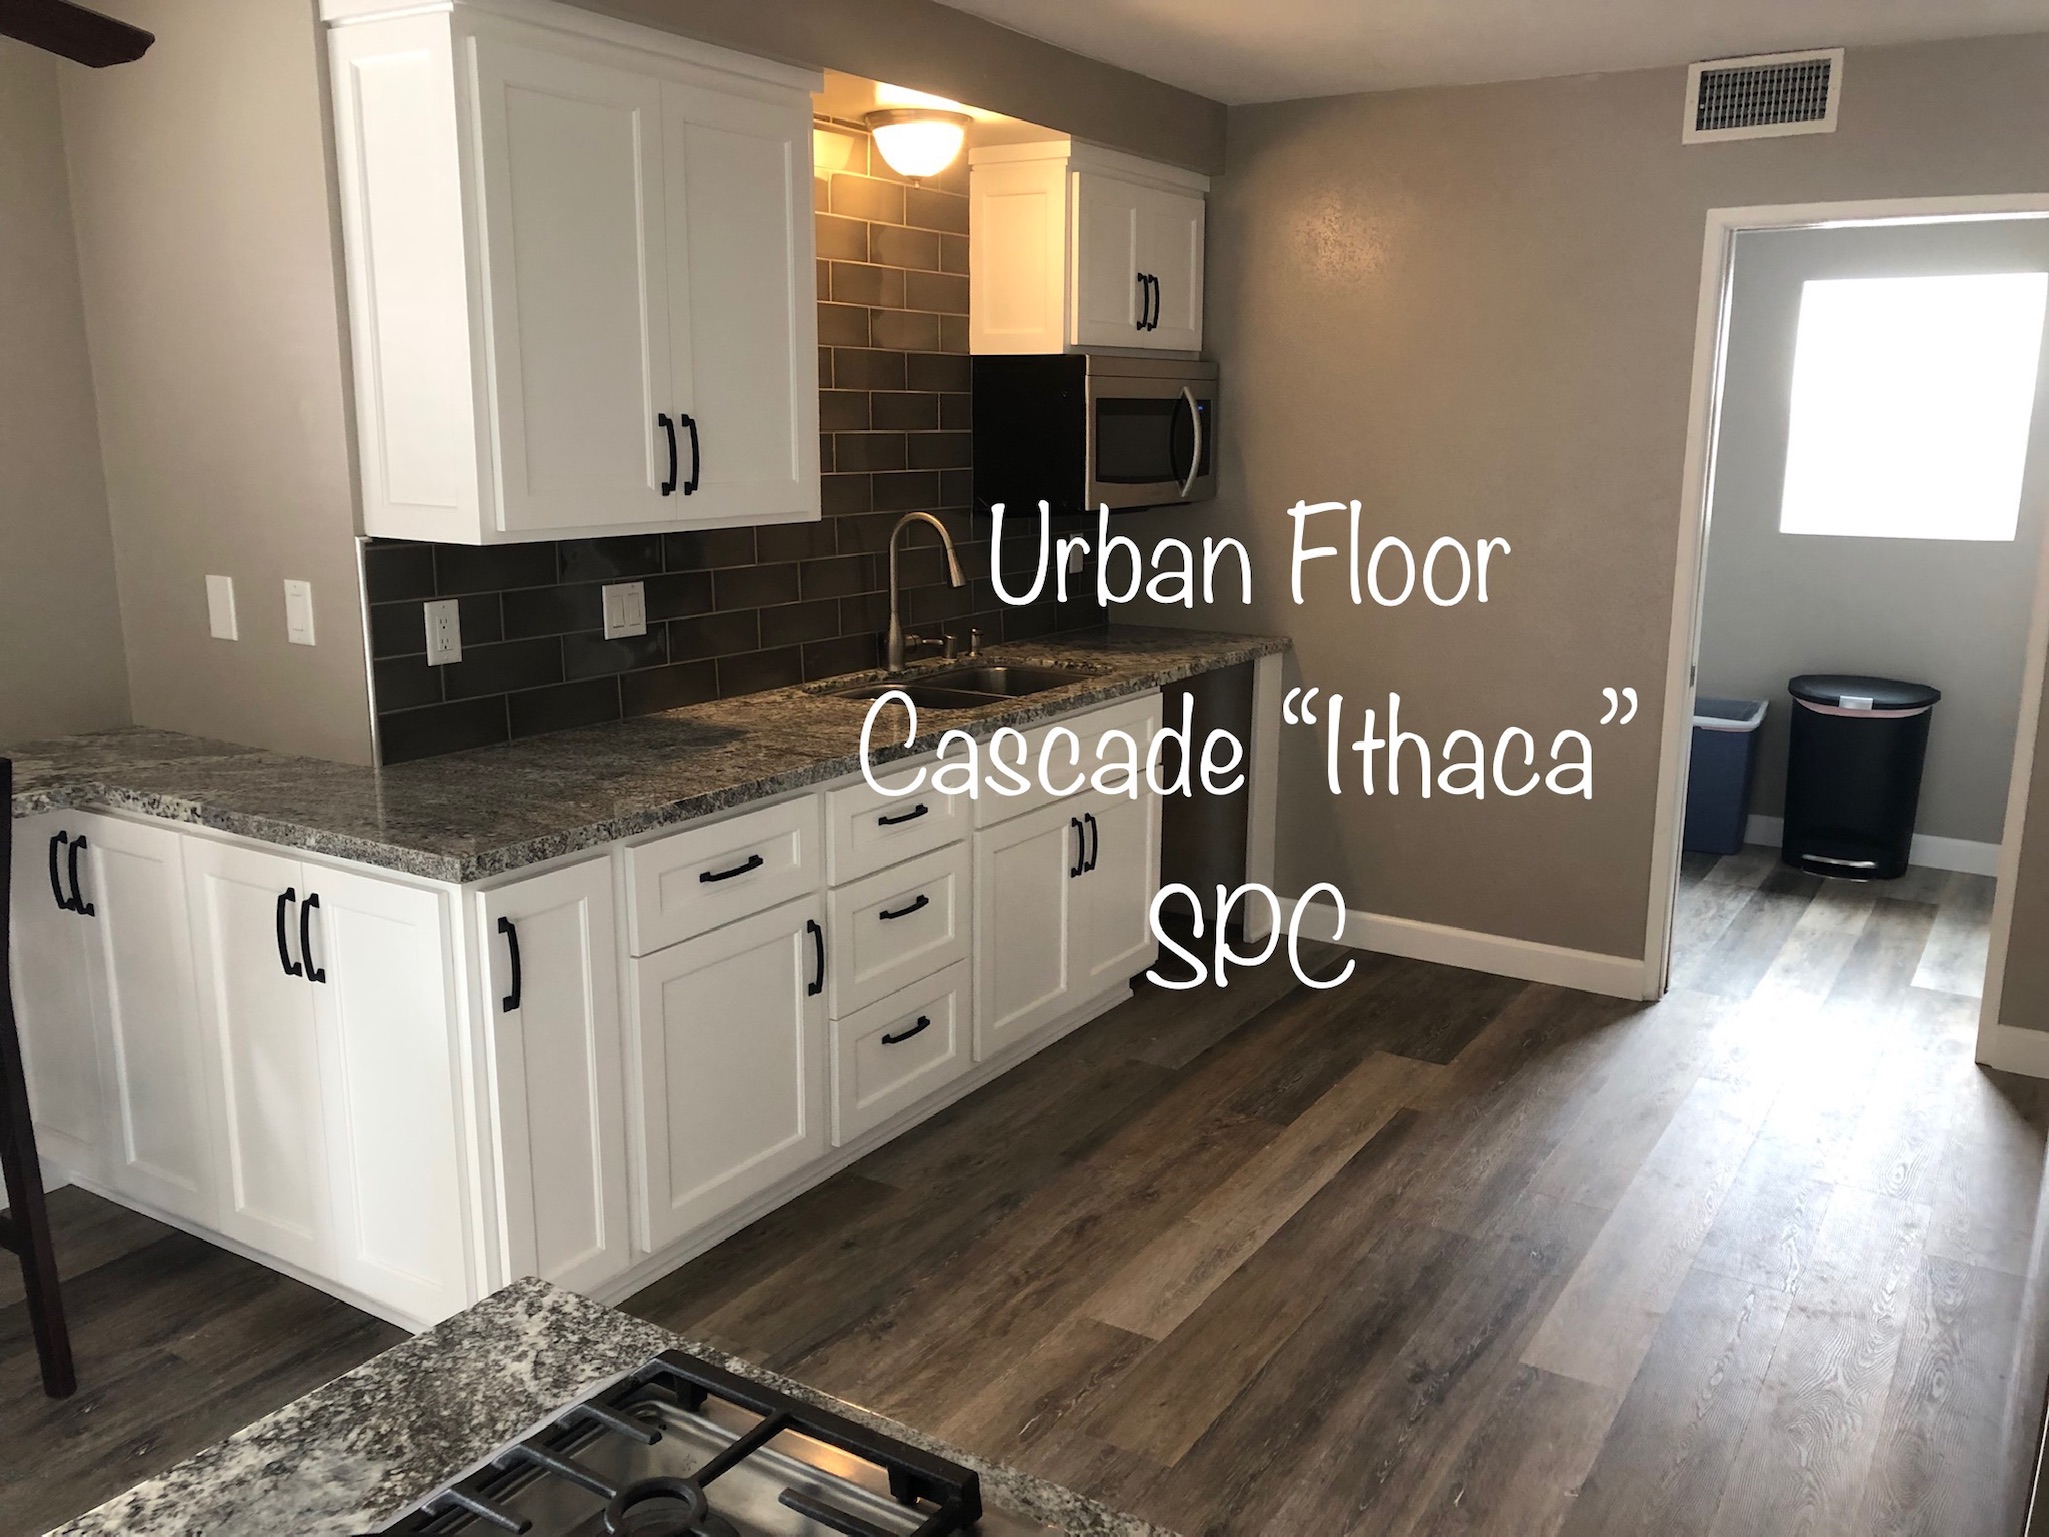 Urban Floor Cascade "Ithaca"